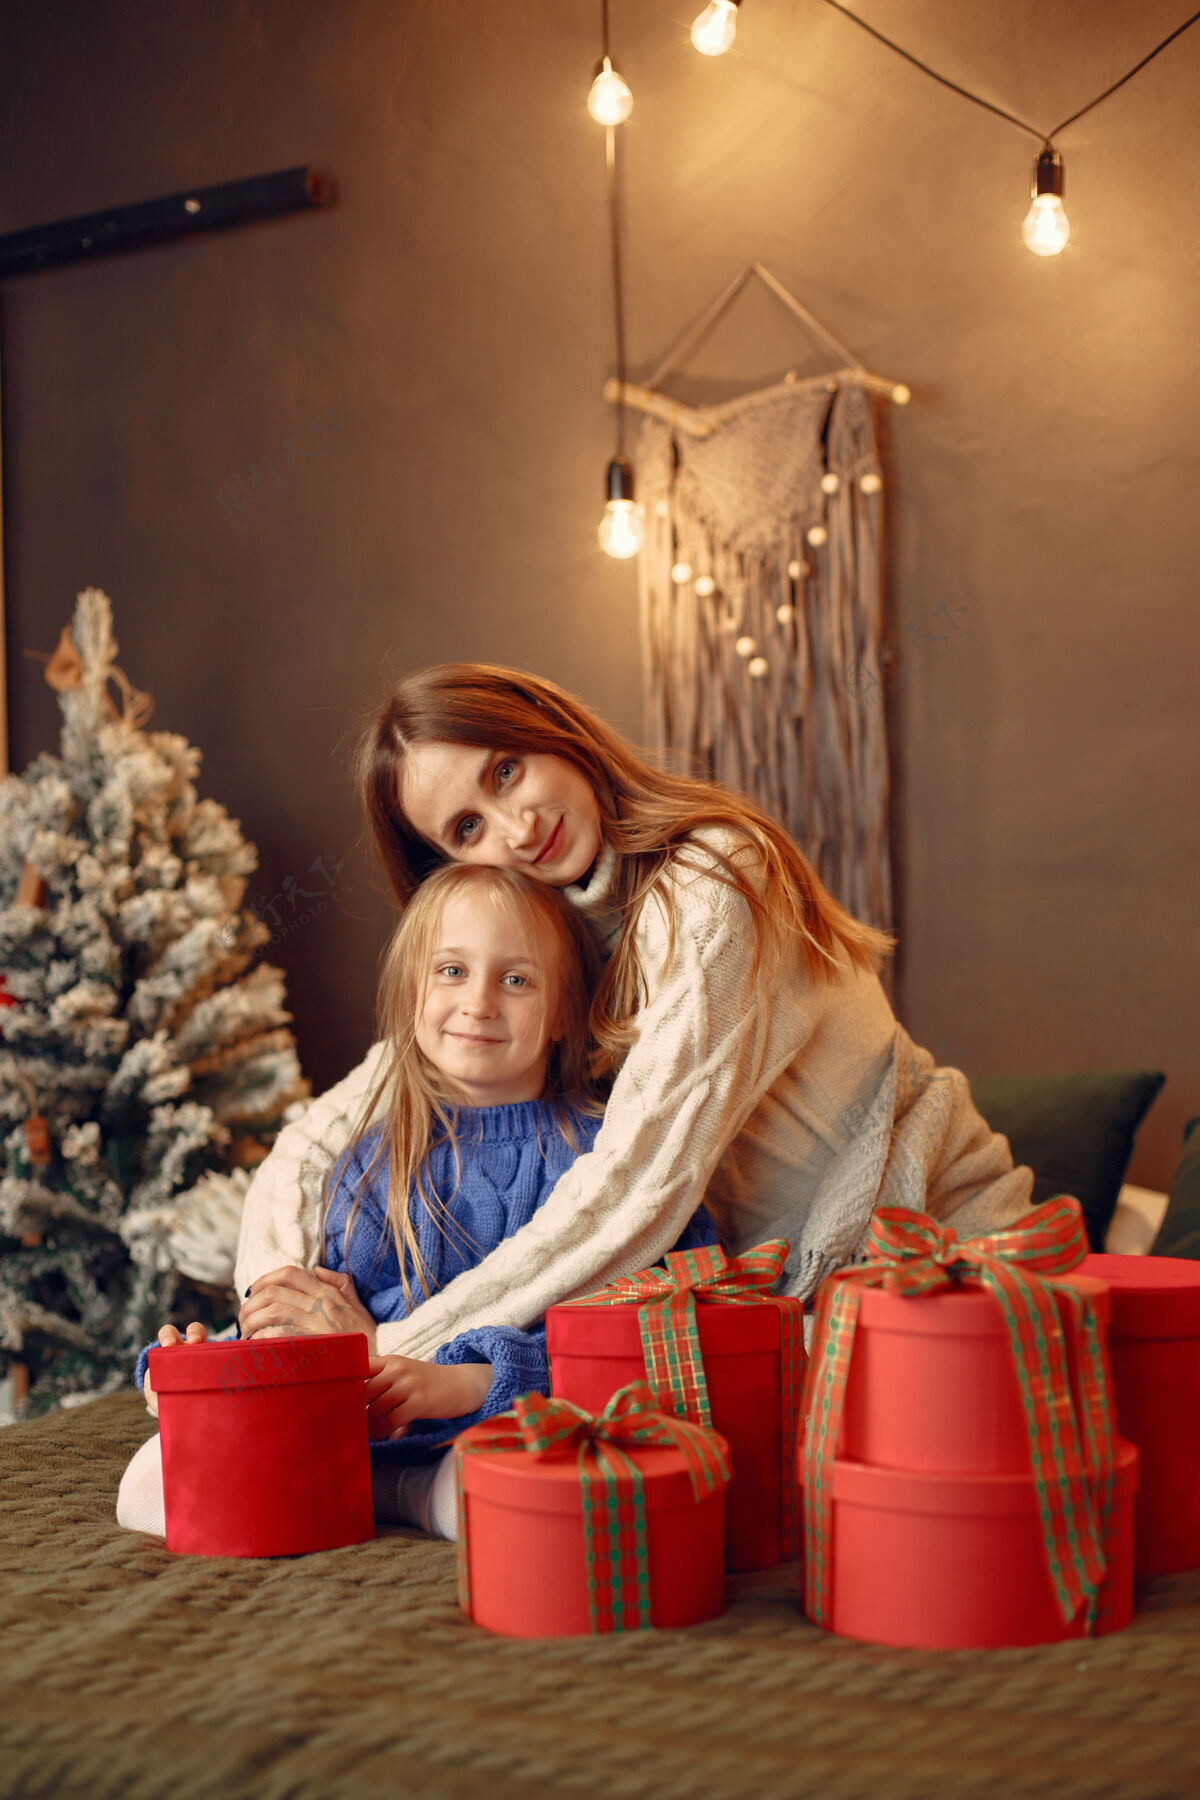 绿色人们在为圣诞节做准备母亲在和女儿玩耍一家人在节日的房间里休息孩子穿着蓝色毛衣碗礼物花环